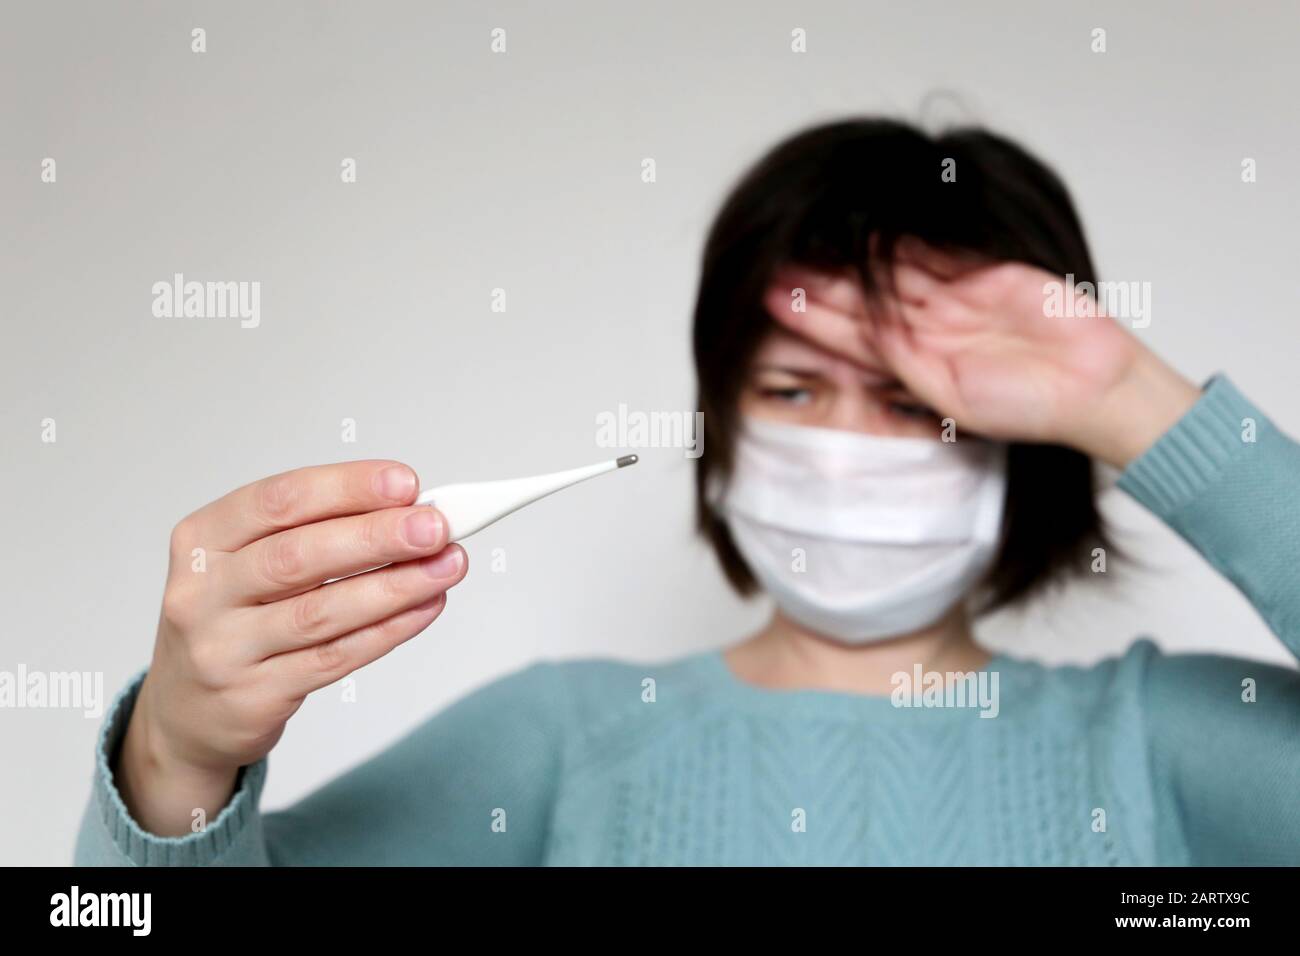 Fiebre y síntomas del coronavirus, la mujer mide la temperatura corporal. Chica preocupada con máscara médica con termómetro Foto de stock